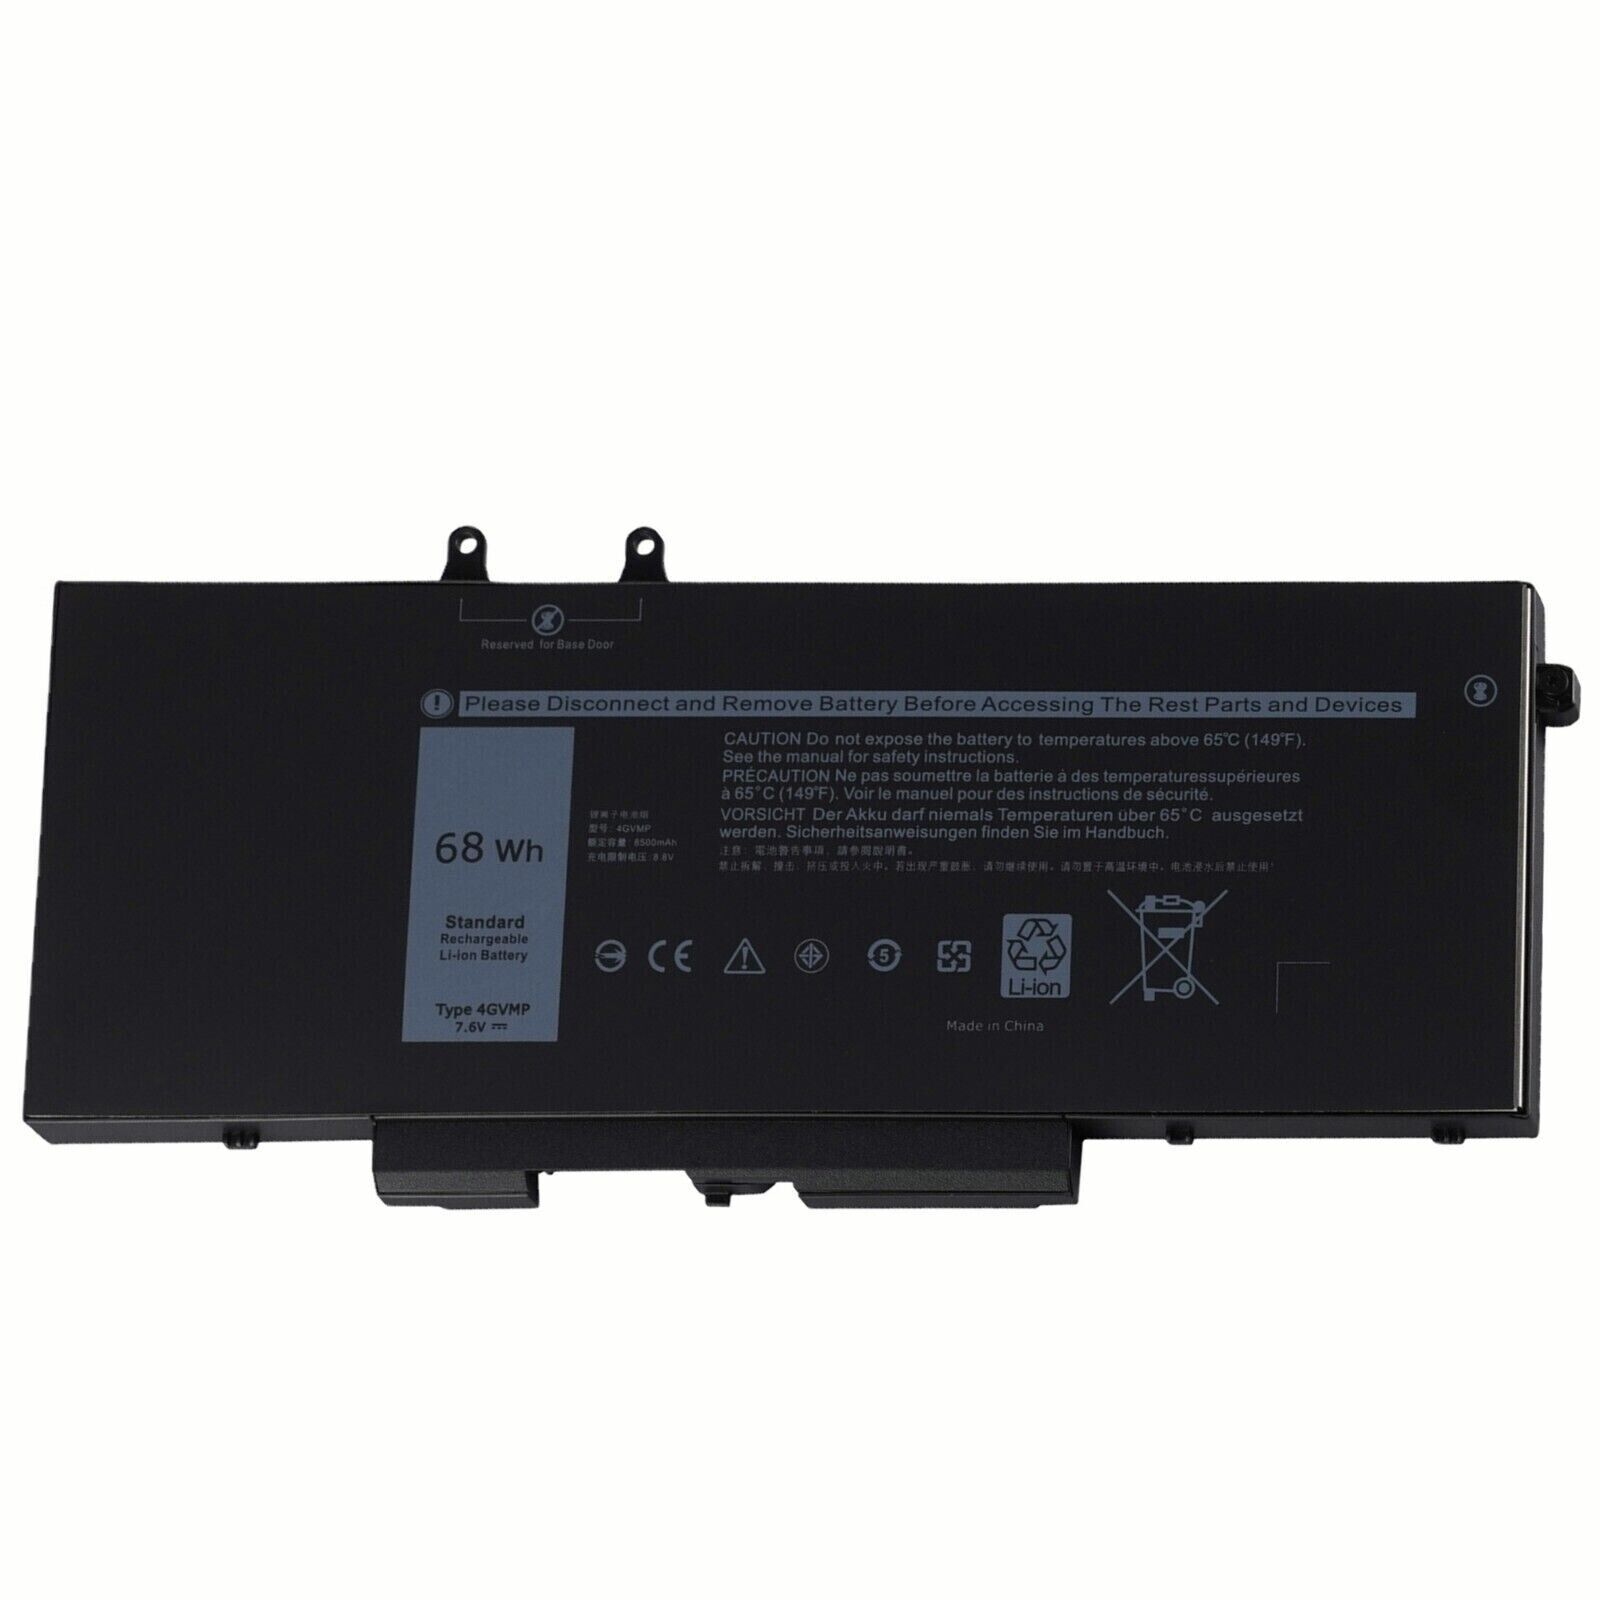 4GVMP Laptop Battery For Dell Latitude 5400 5500 Precision 3540 9JRYT C5GV2 68Wh